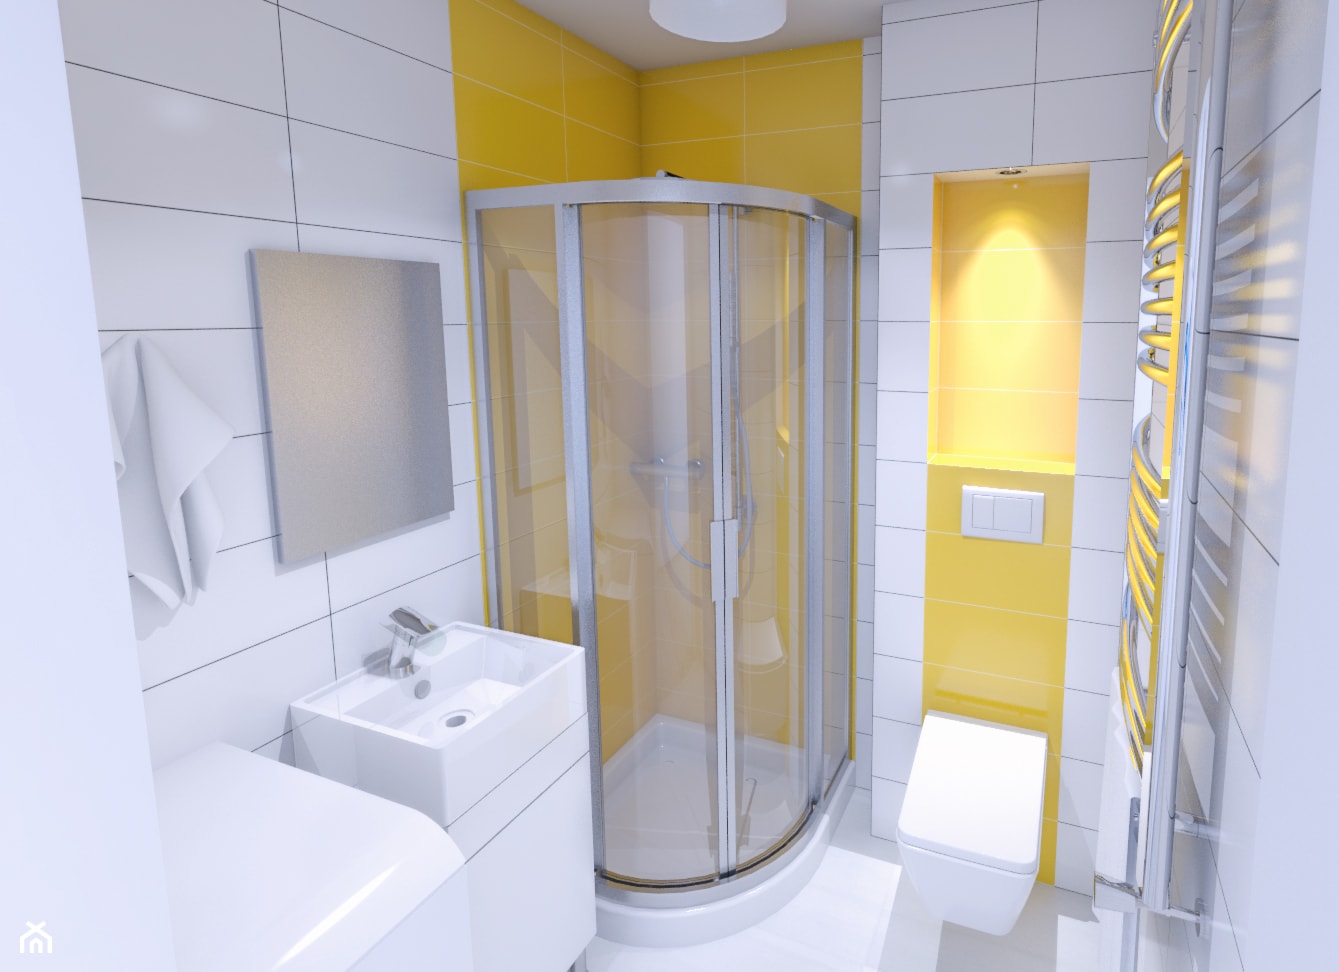 aranżacja łazienki 2,5 m2 w kawalerce 24 m2 - zdjęcie od Michał Ślusarczyk - Homebook